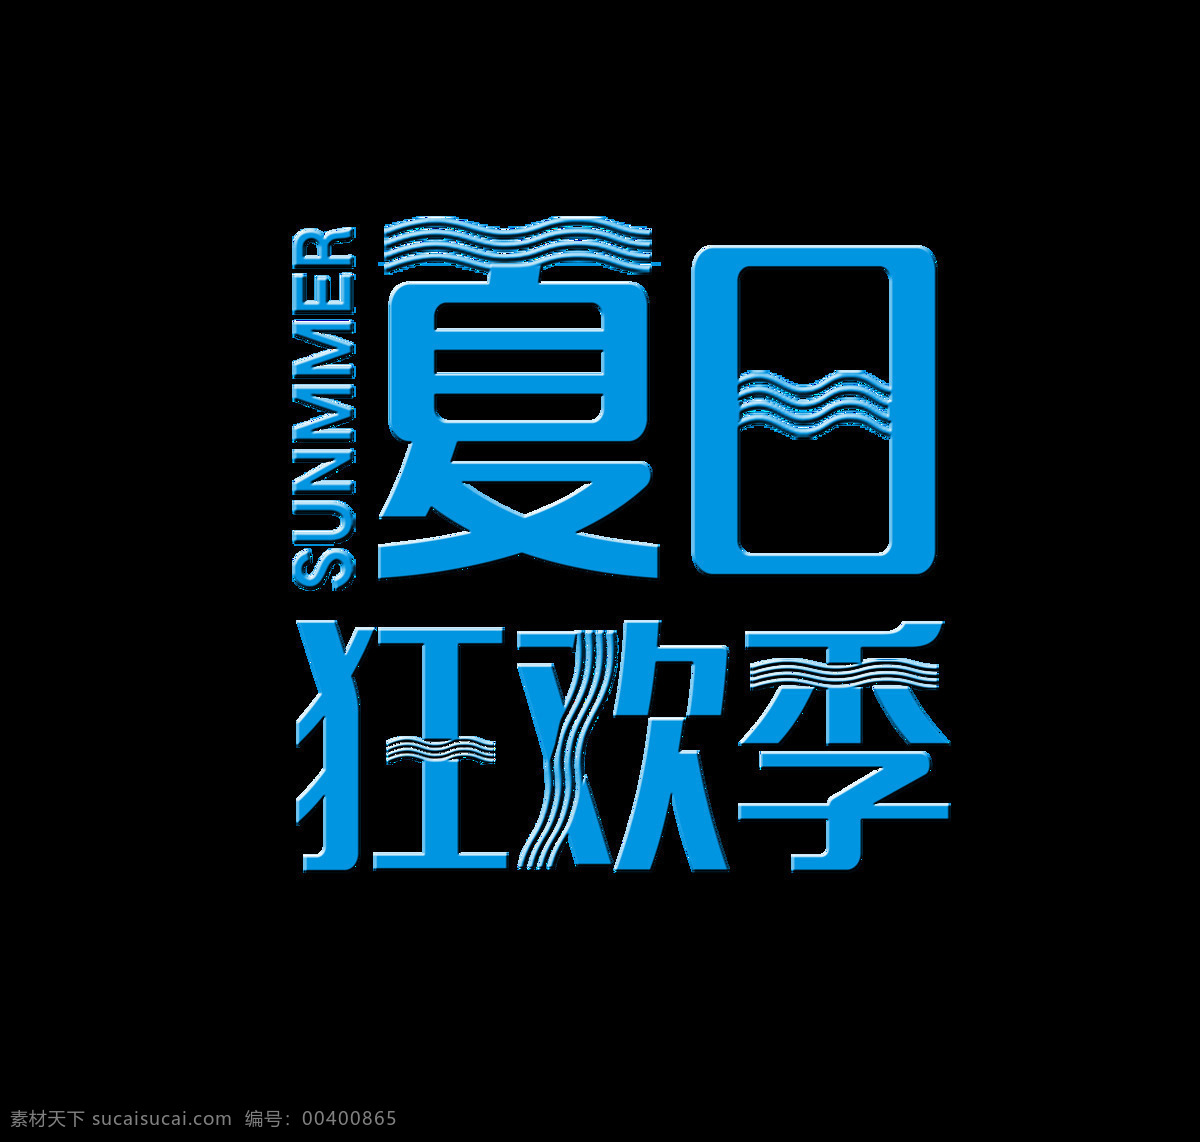 夏日 狂欢 季 艺术 字 字体 促销 广告 夏日狂欢季 宣传 海报 艺术字